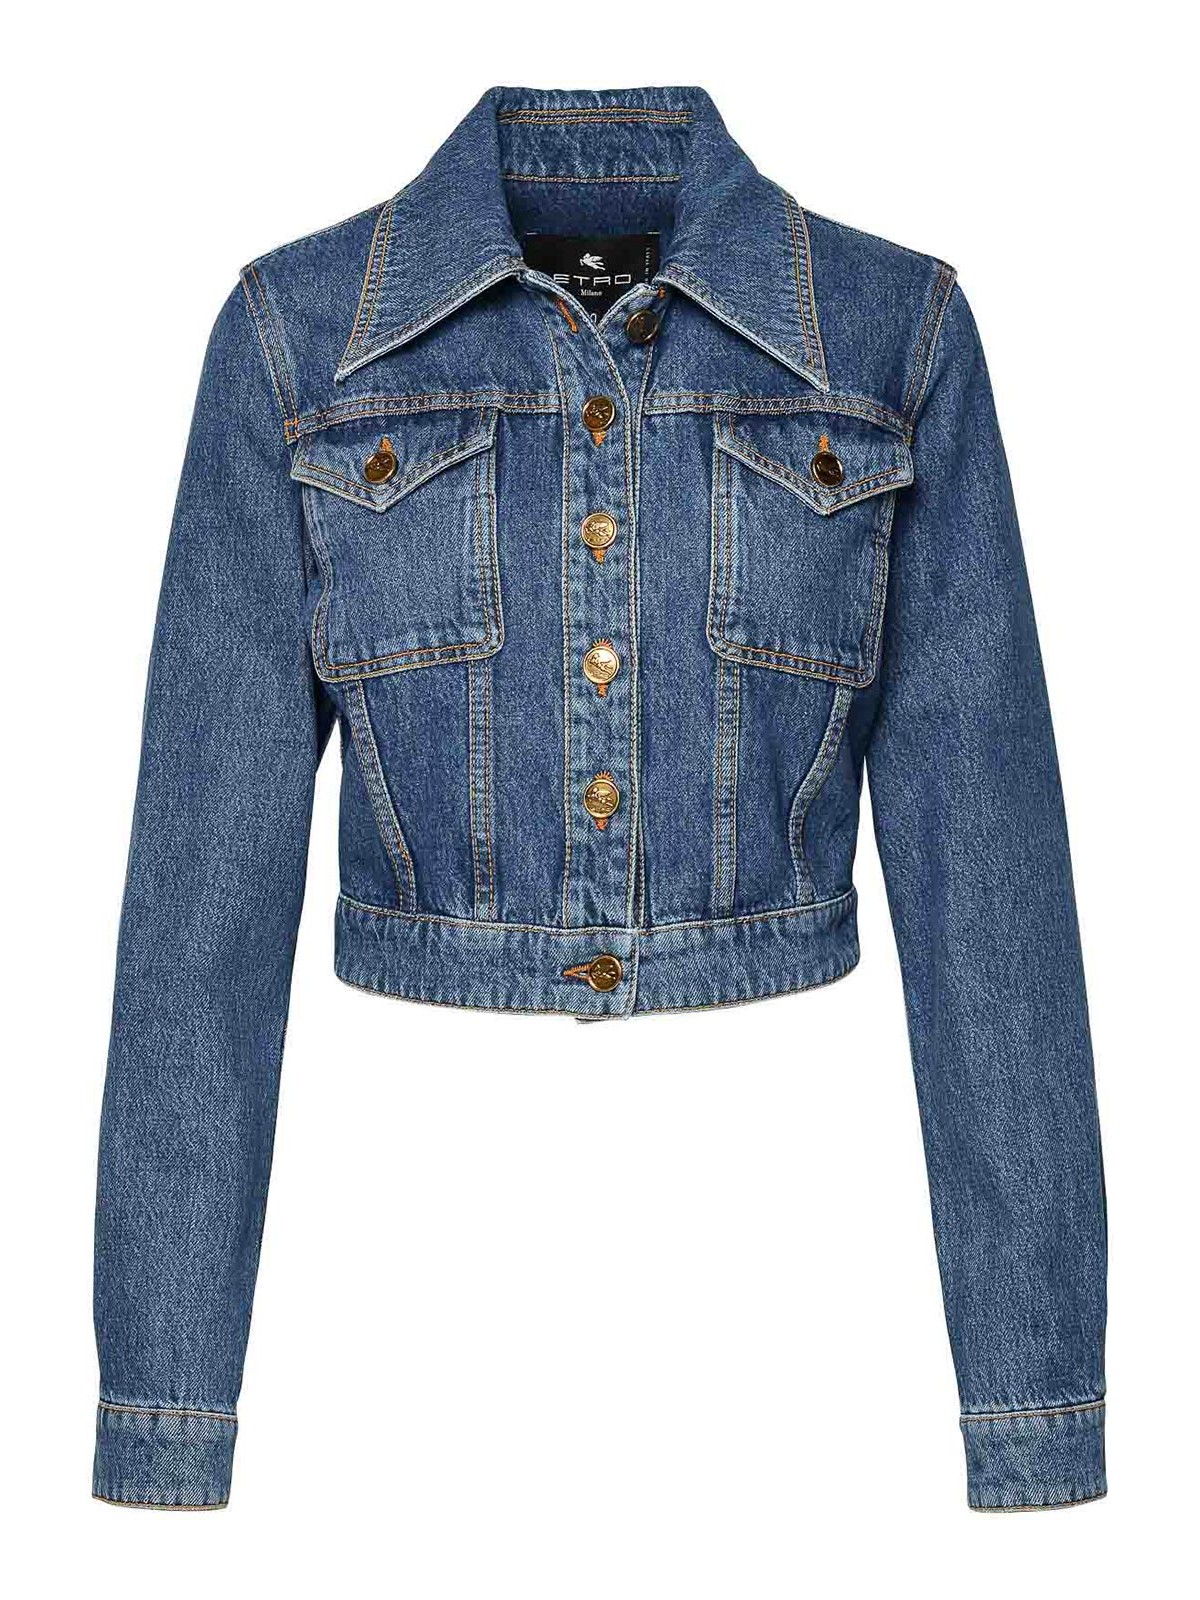 Etro Blue Cotton Jacket